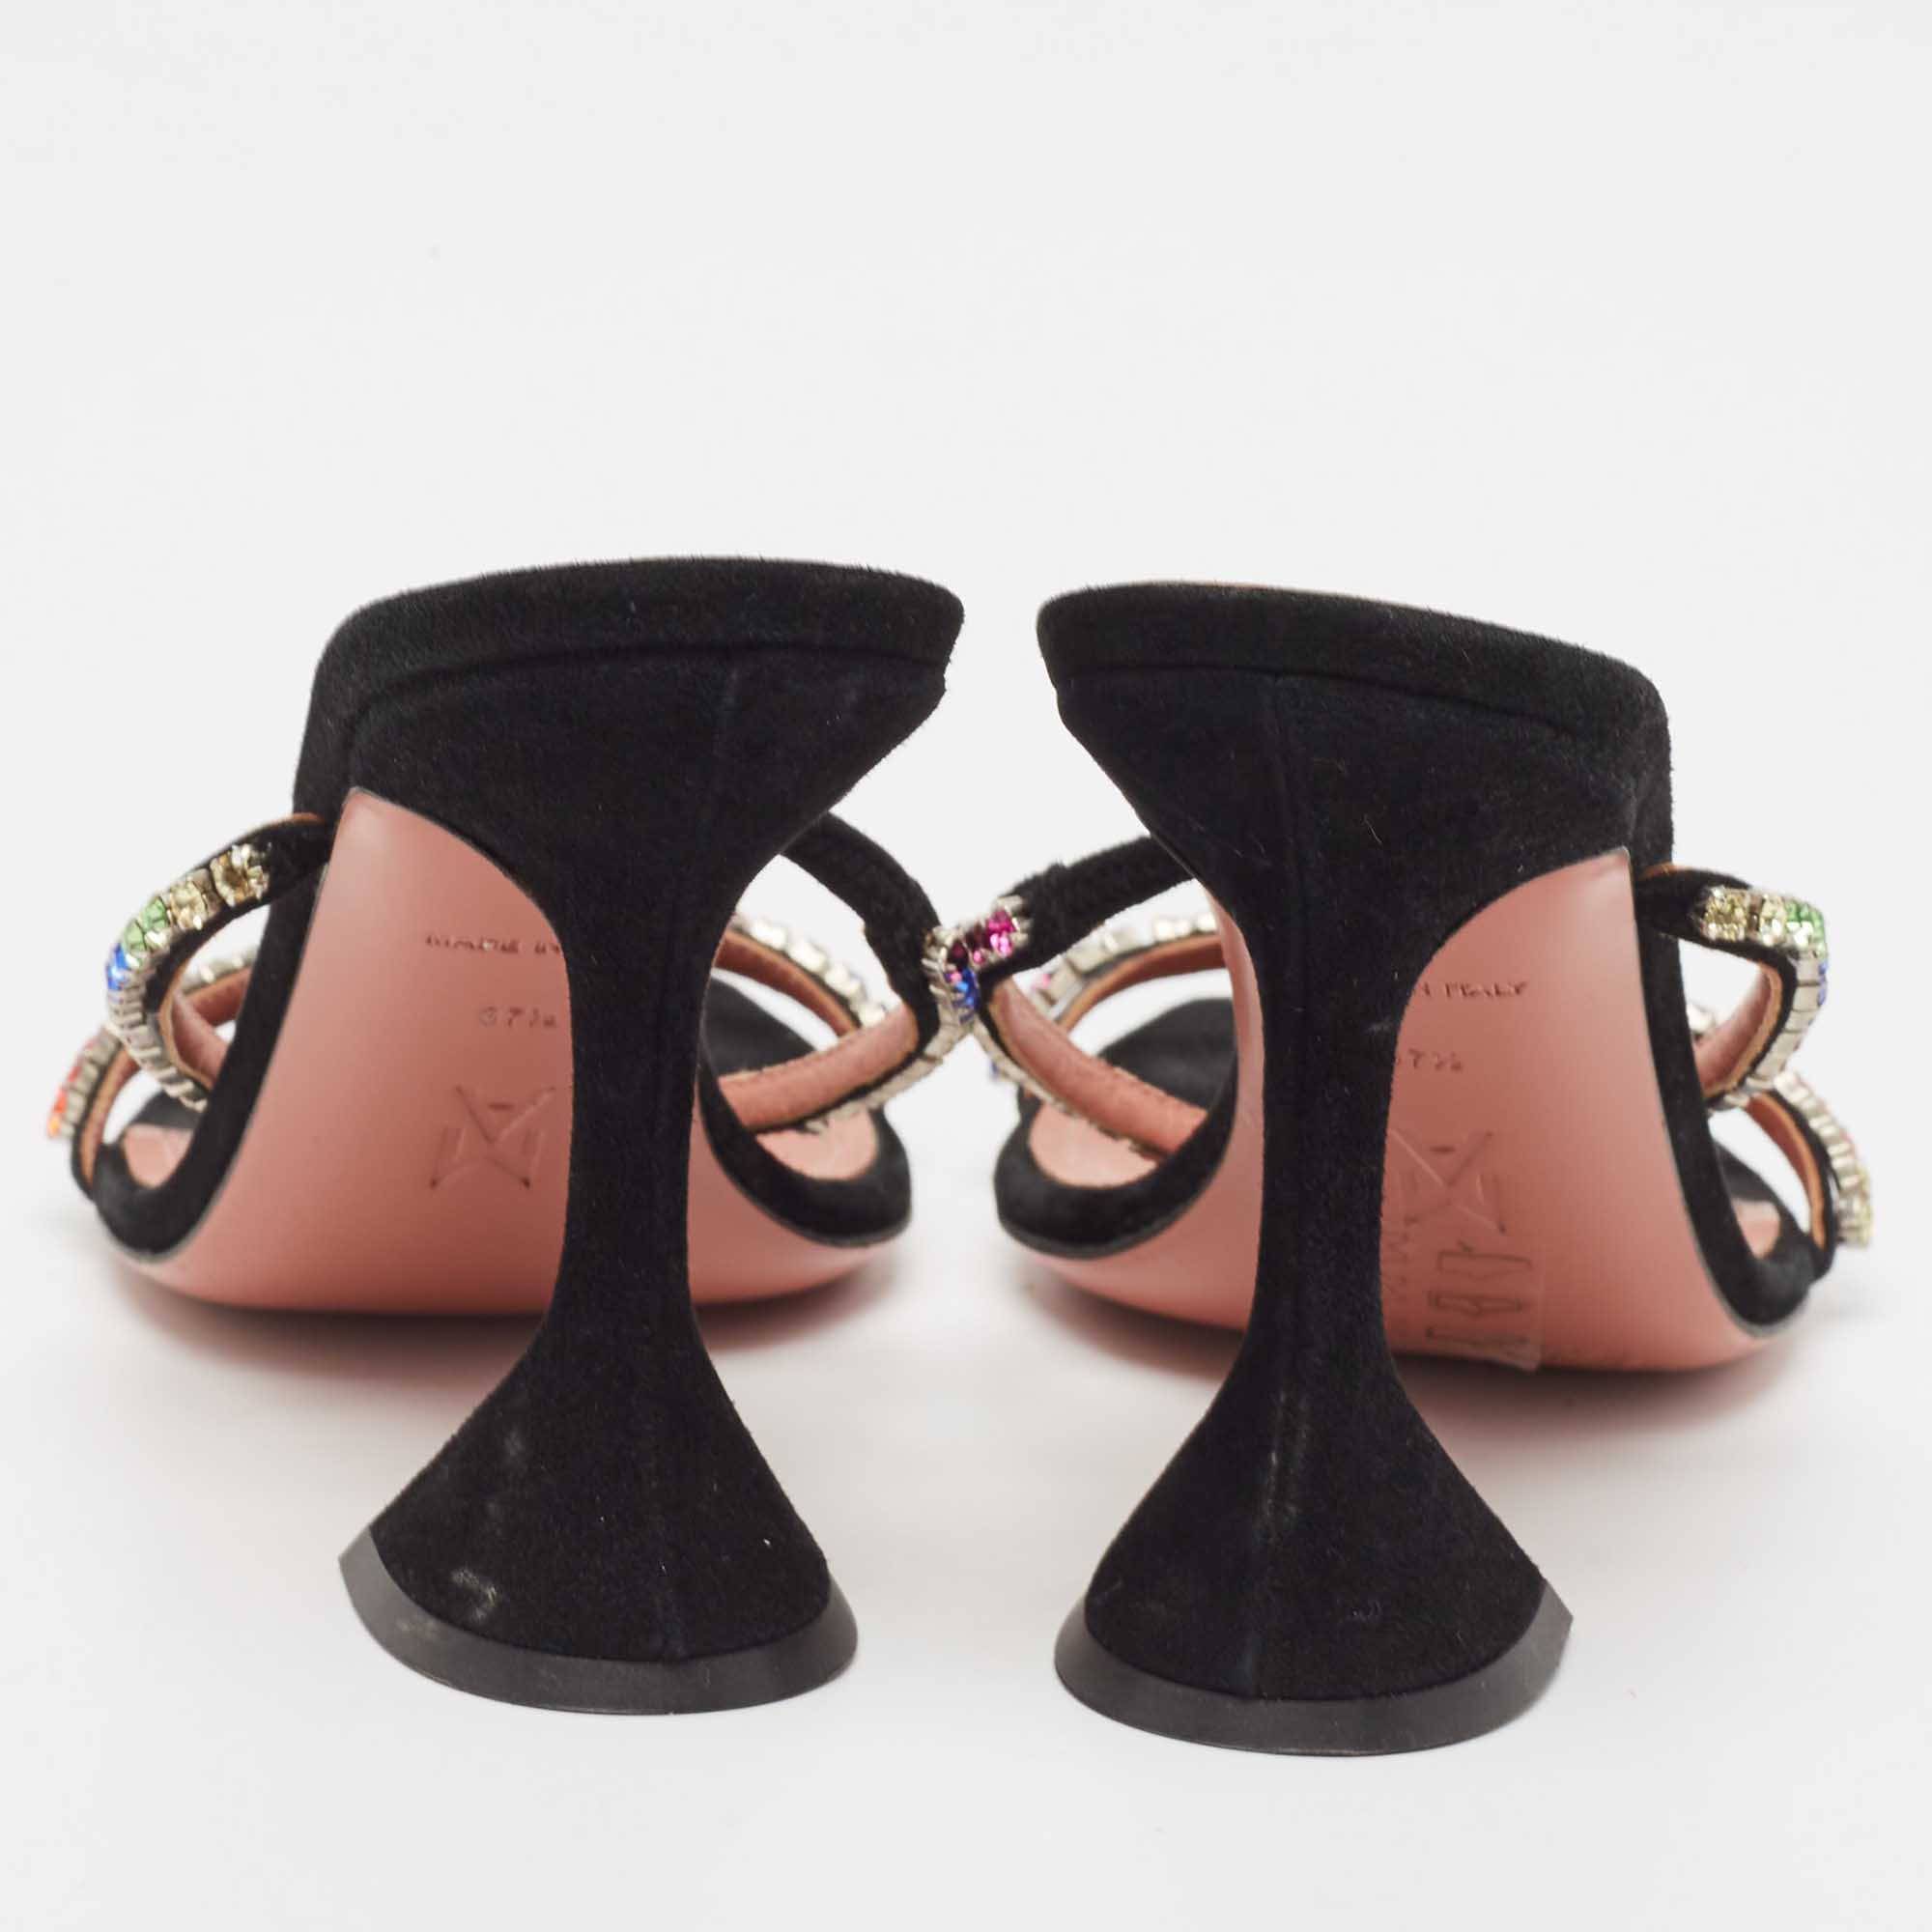 Amina Muaddi Black Suede Crystal Embellished Gilda Slide Sandals Size 37.5